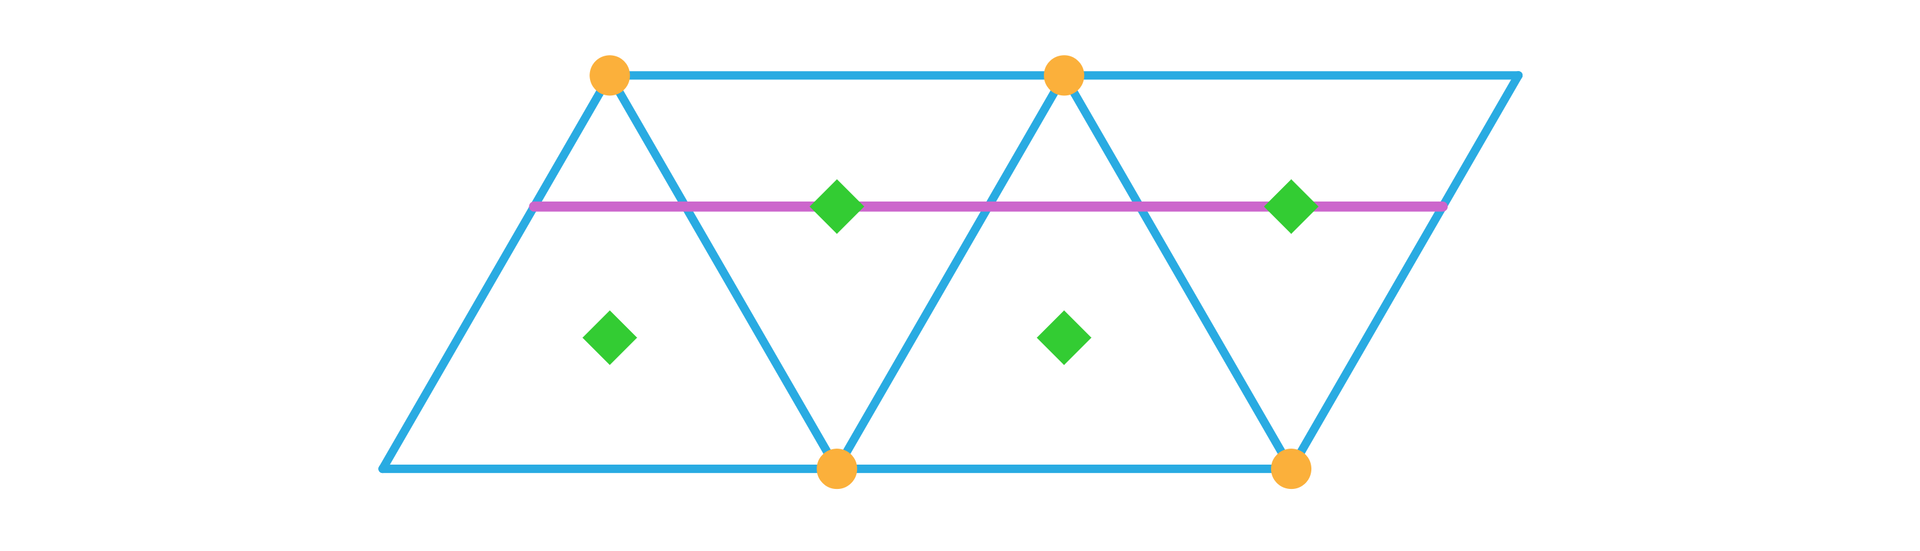 Ilustracja przedstawia cztery trójkąty ułożone obok siebie w taki sposób, że razem mają kształt równoległoboku. W równoległoboku zaznaczono odcinek równoległy do dłuższych boków równoległoboku